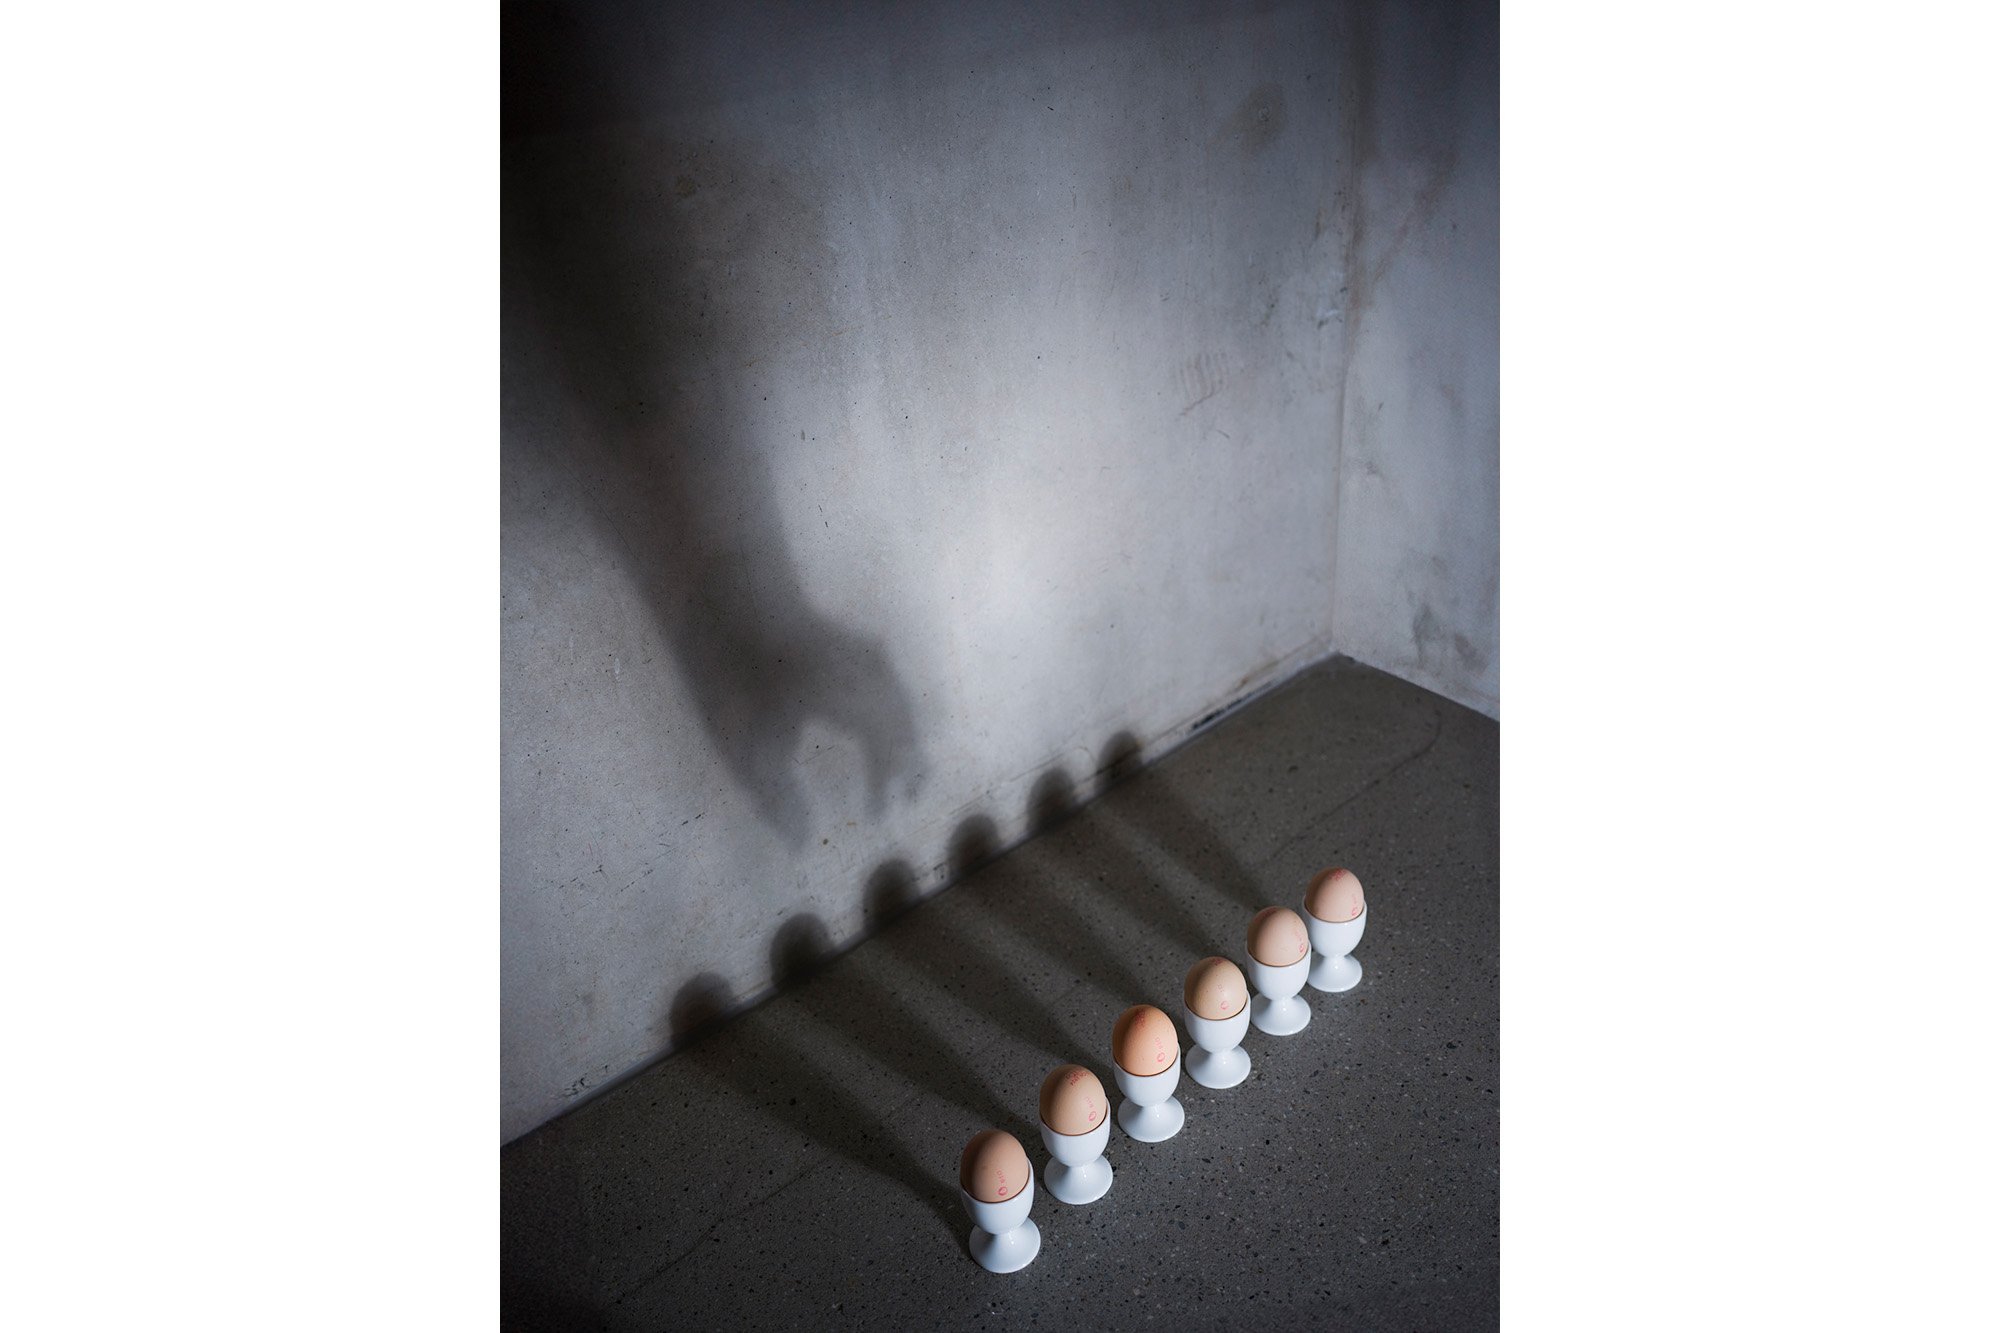 Zsofia_Daniel-Shadows and Eggs_1.jpg